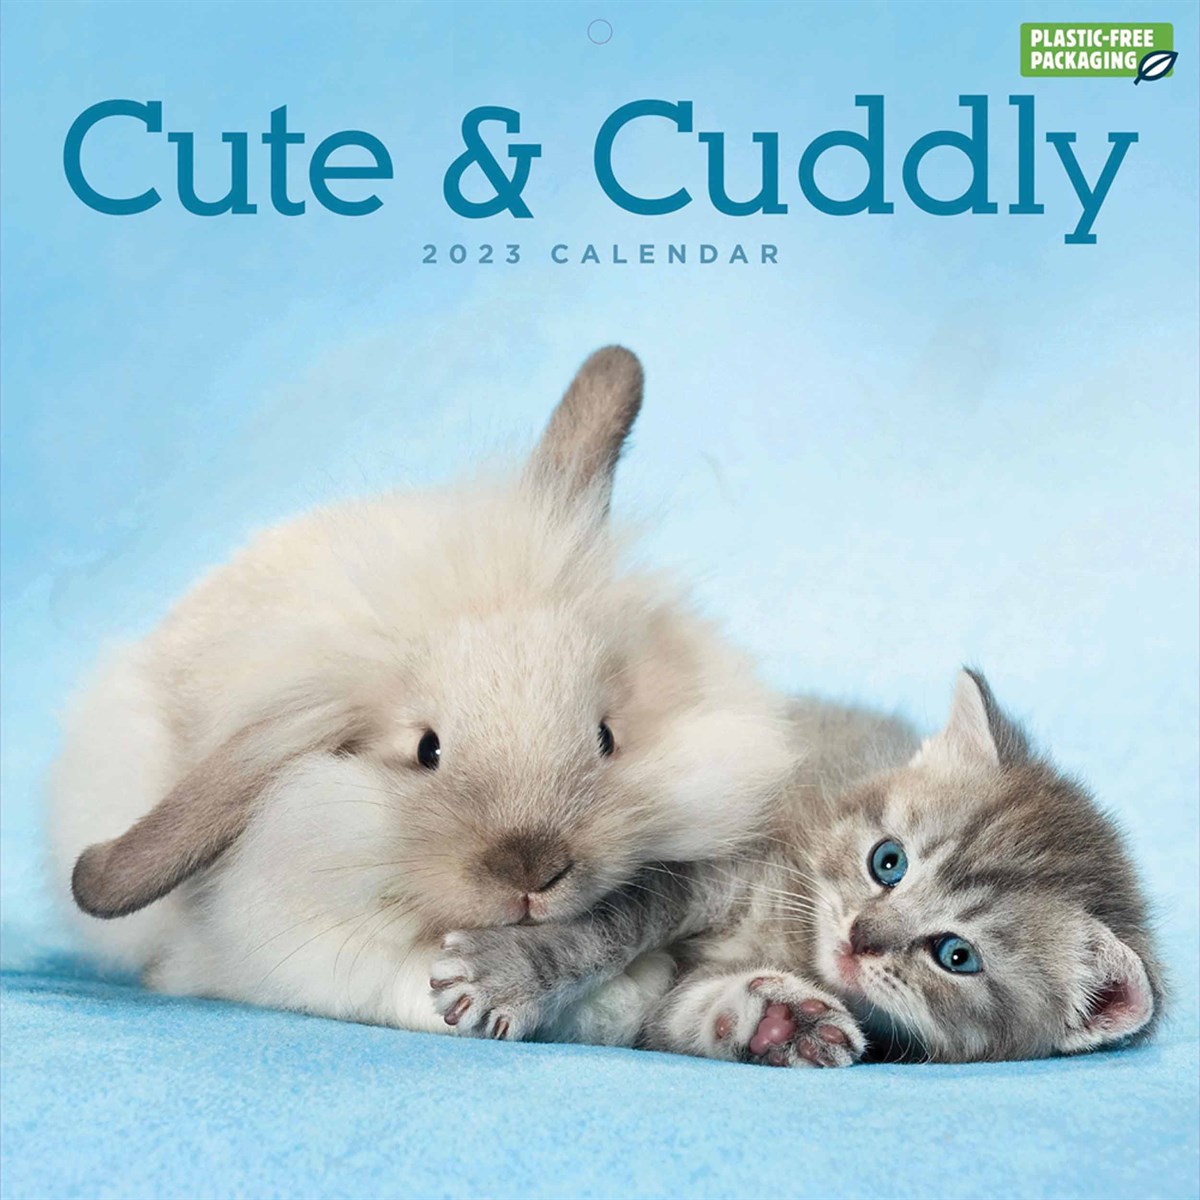 Cute & Cuddly 2023 Calendars